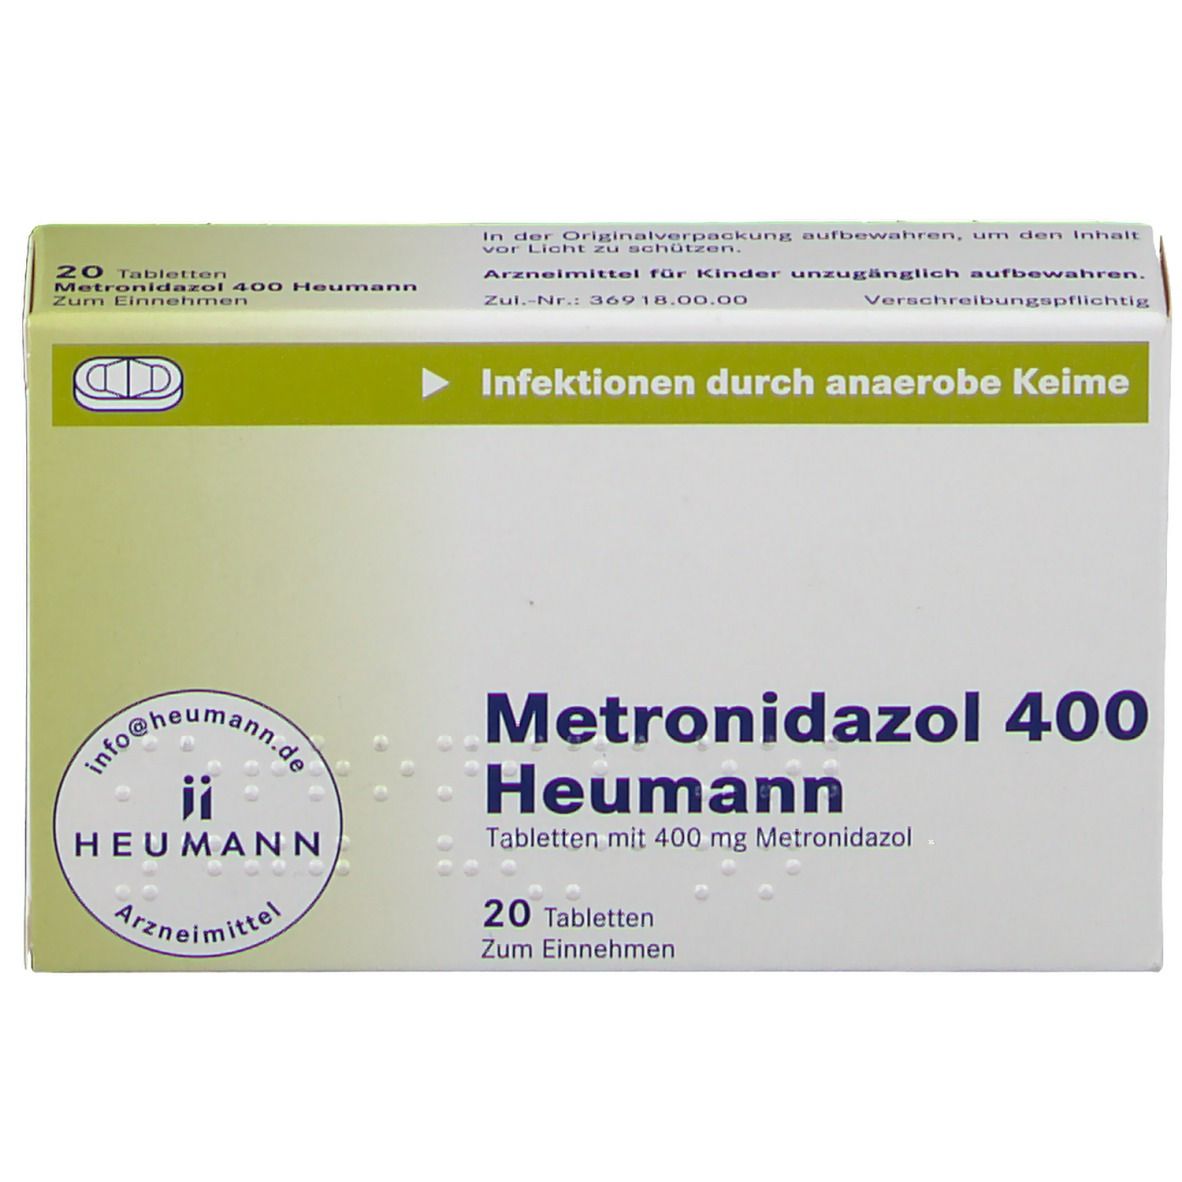 Metronidazol 400 Heumann